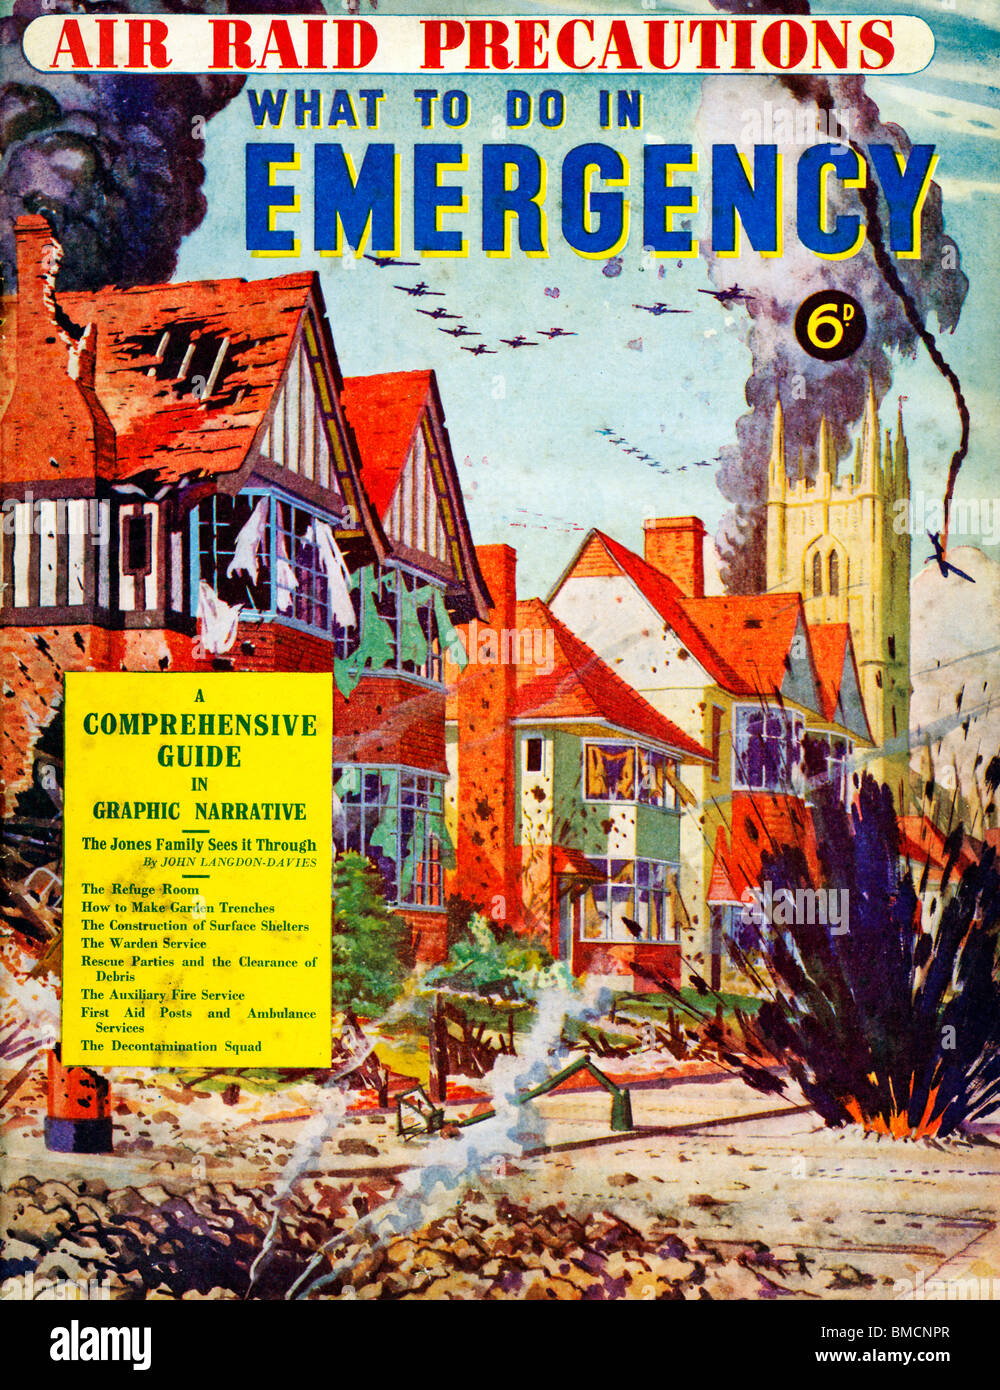 Air Raid precauciones, revista inglesa del Blitz con historias e instrucciones sobre qué hacer en un bombardeo alemán Foto de stock